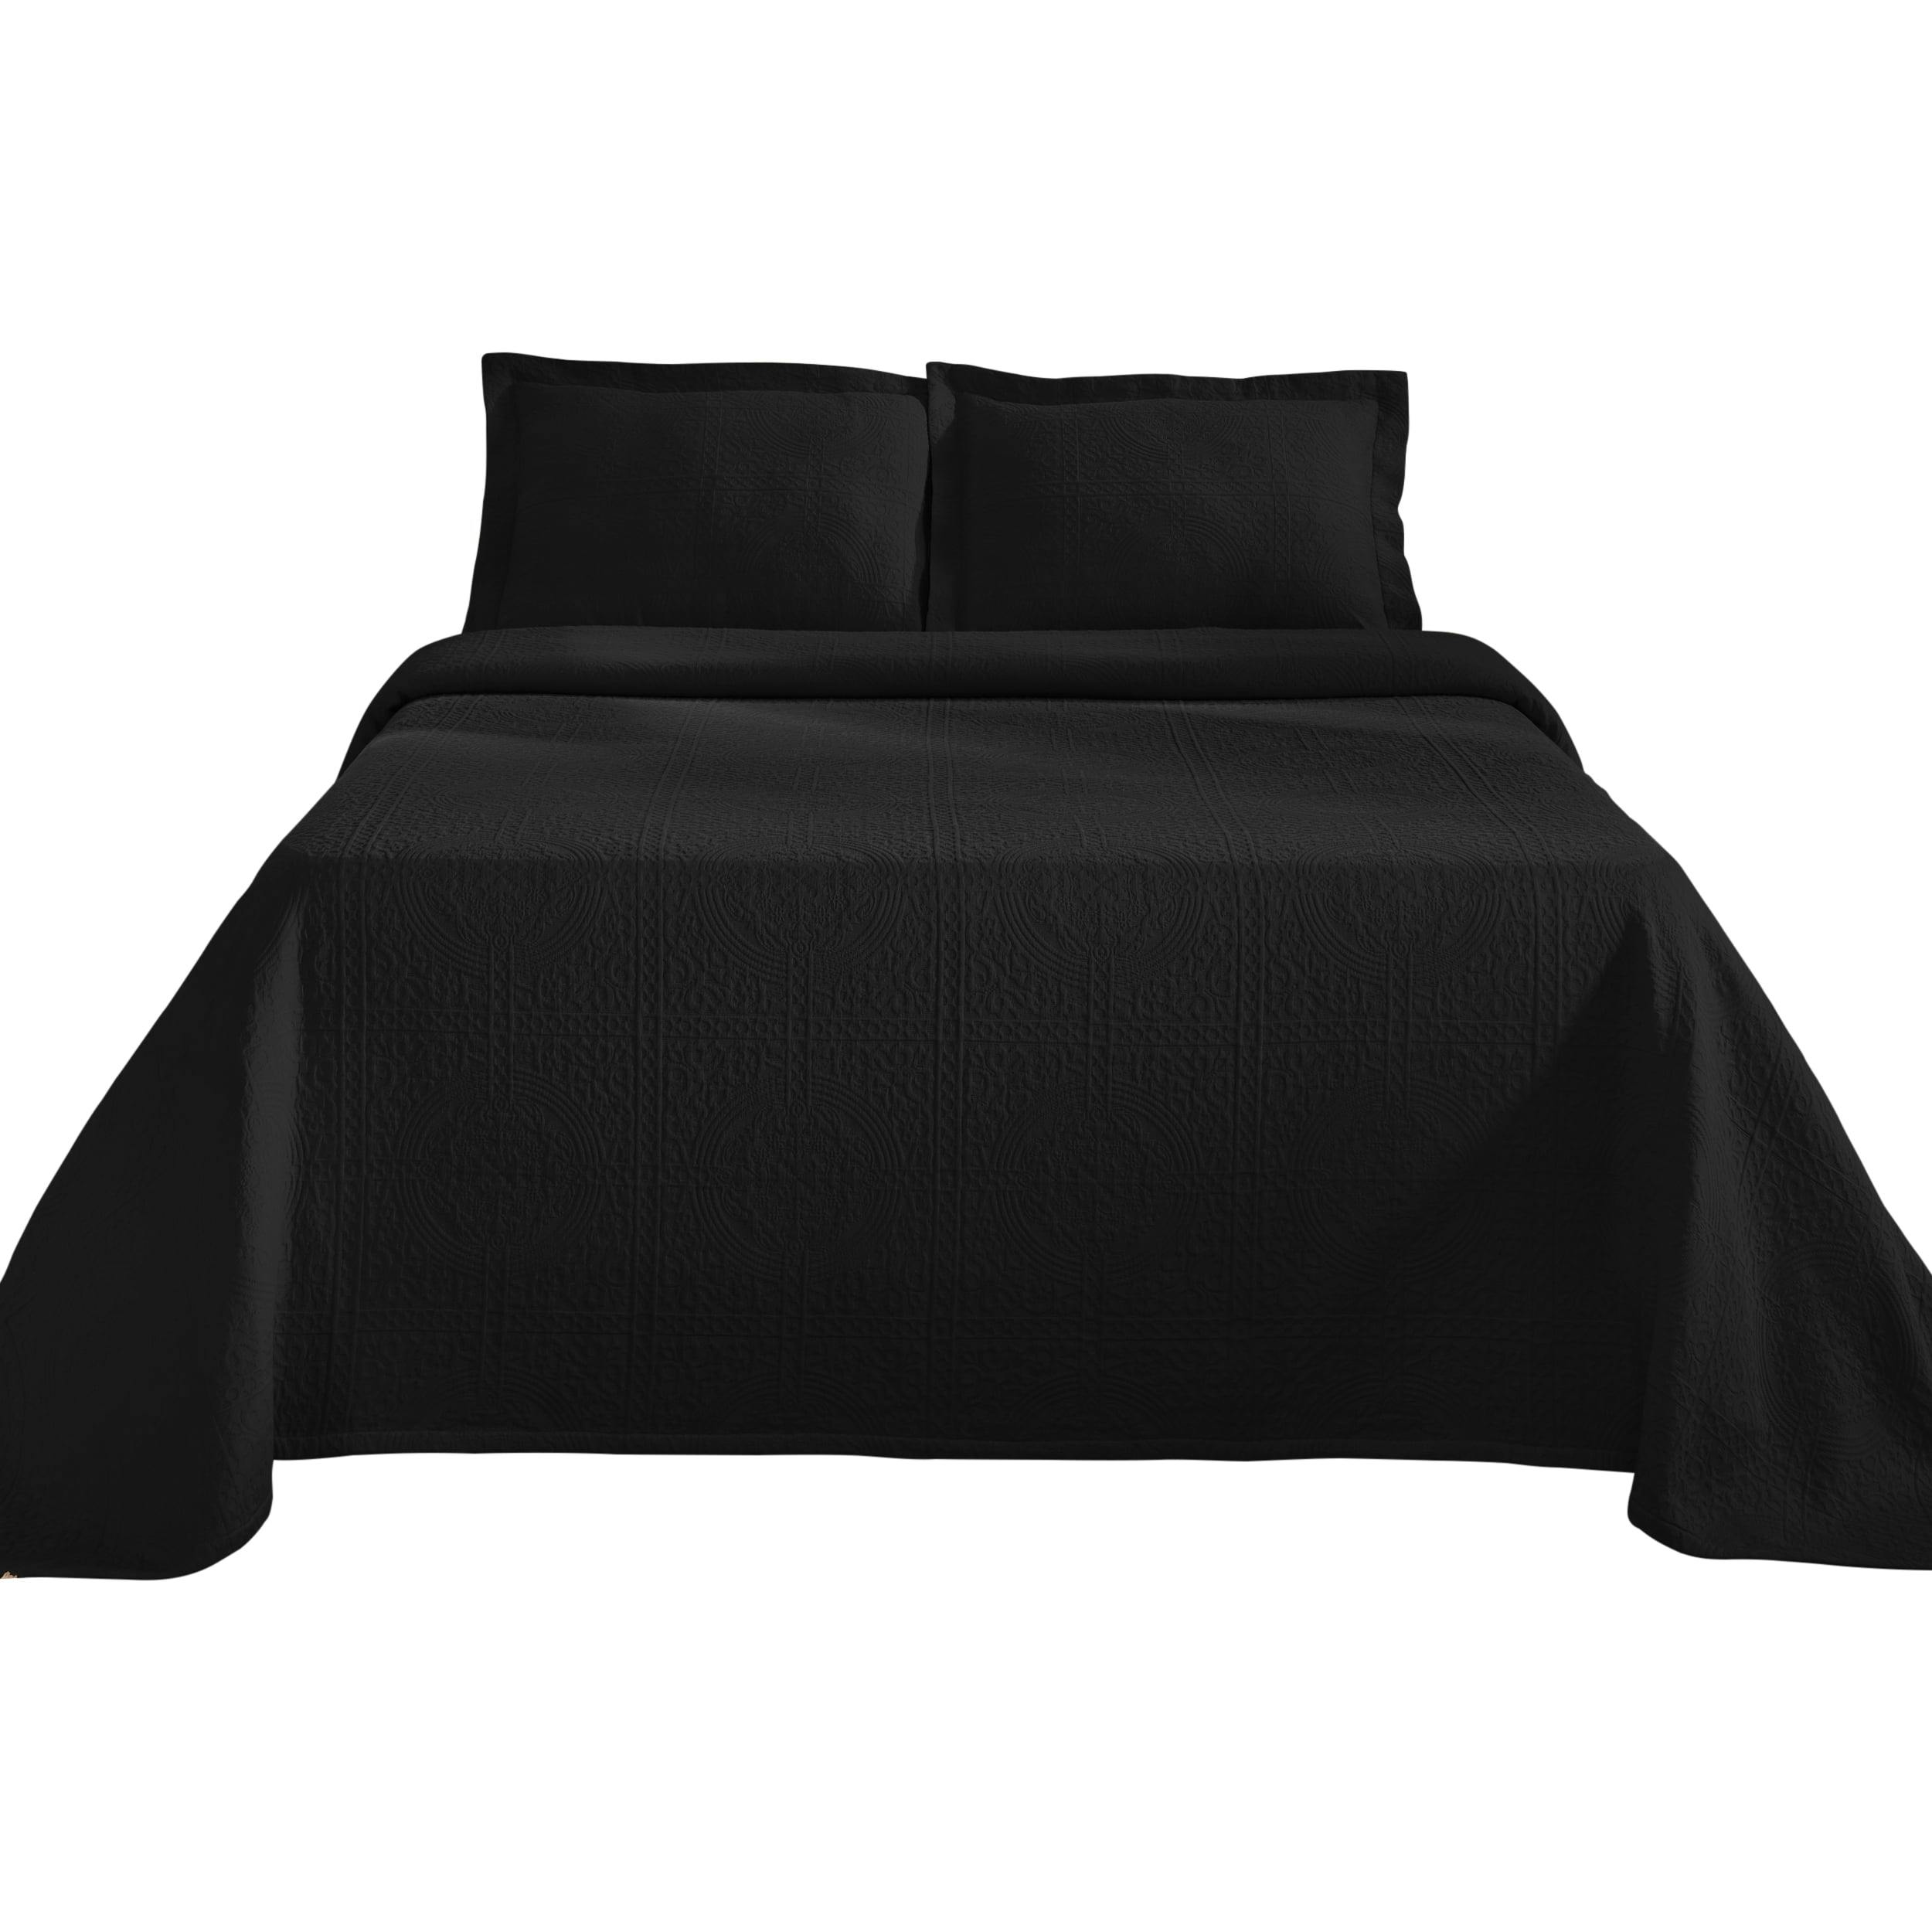 Elegant Medallion Cotton Bedspread Set in Black - Full Size